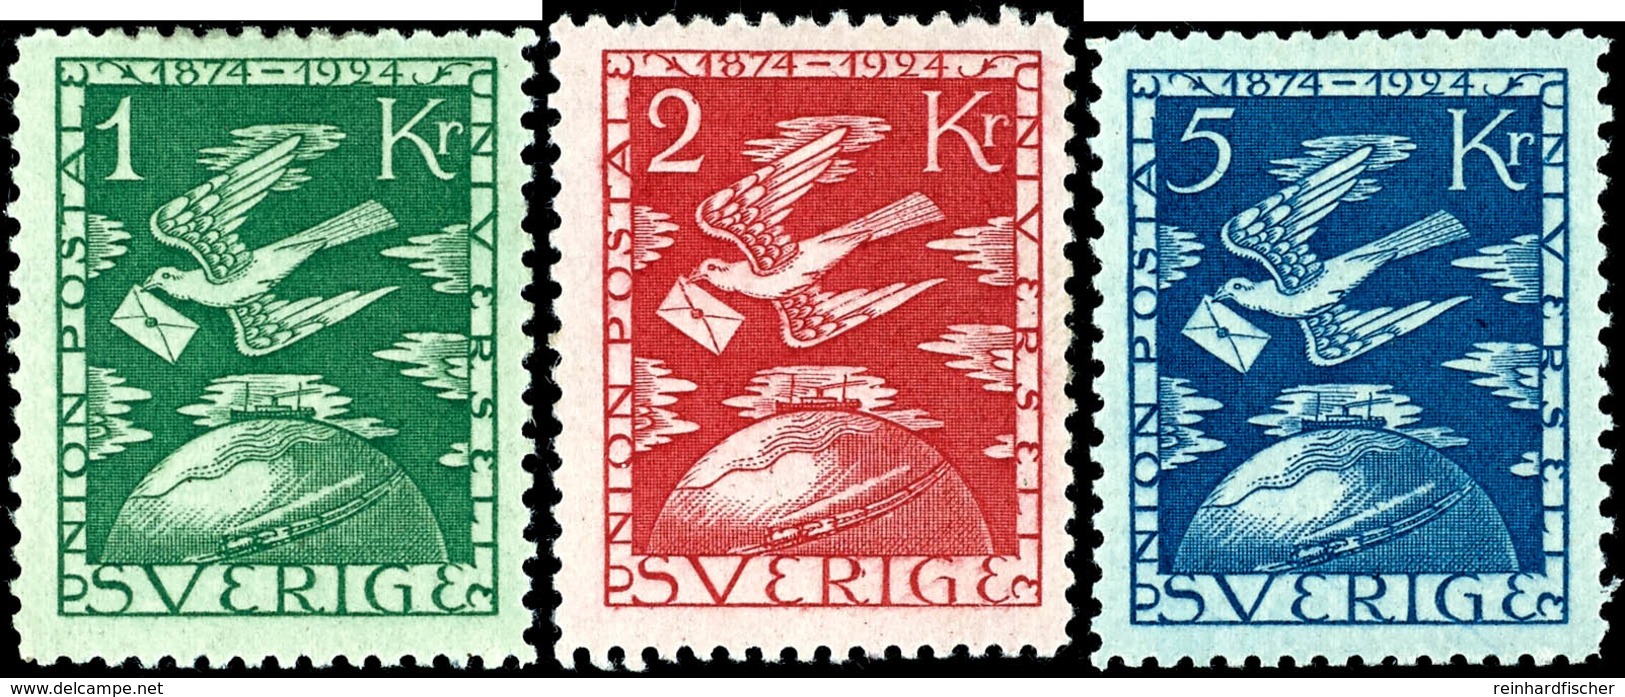 7256 5 Ö. Bis 5 Kr. UPU, Ungebraucht In Normaler Zähnung, Mi. 750,-, Katalog: 159/73 * - Sweden